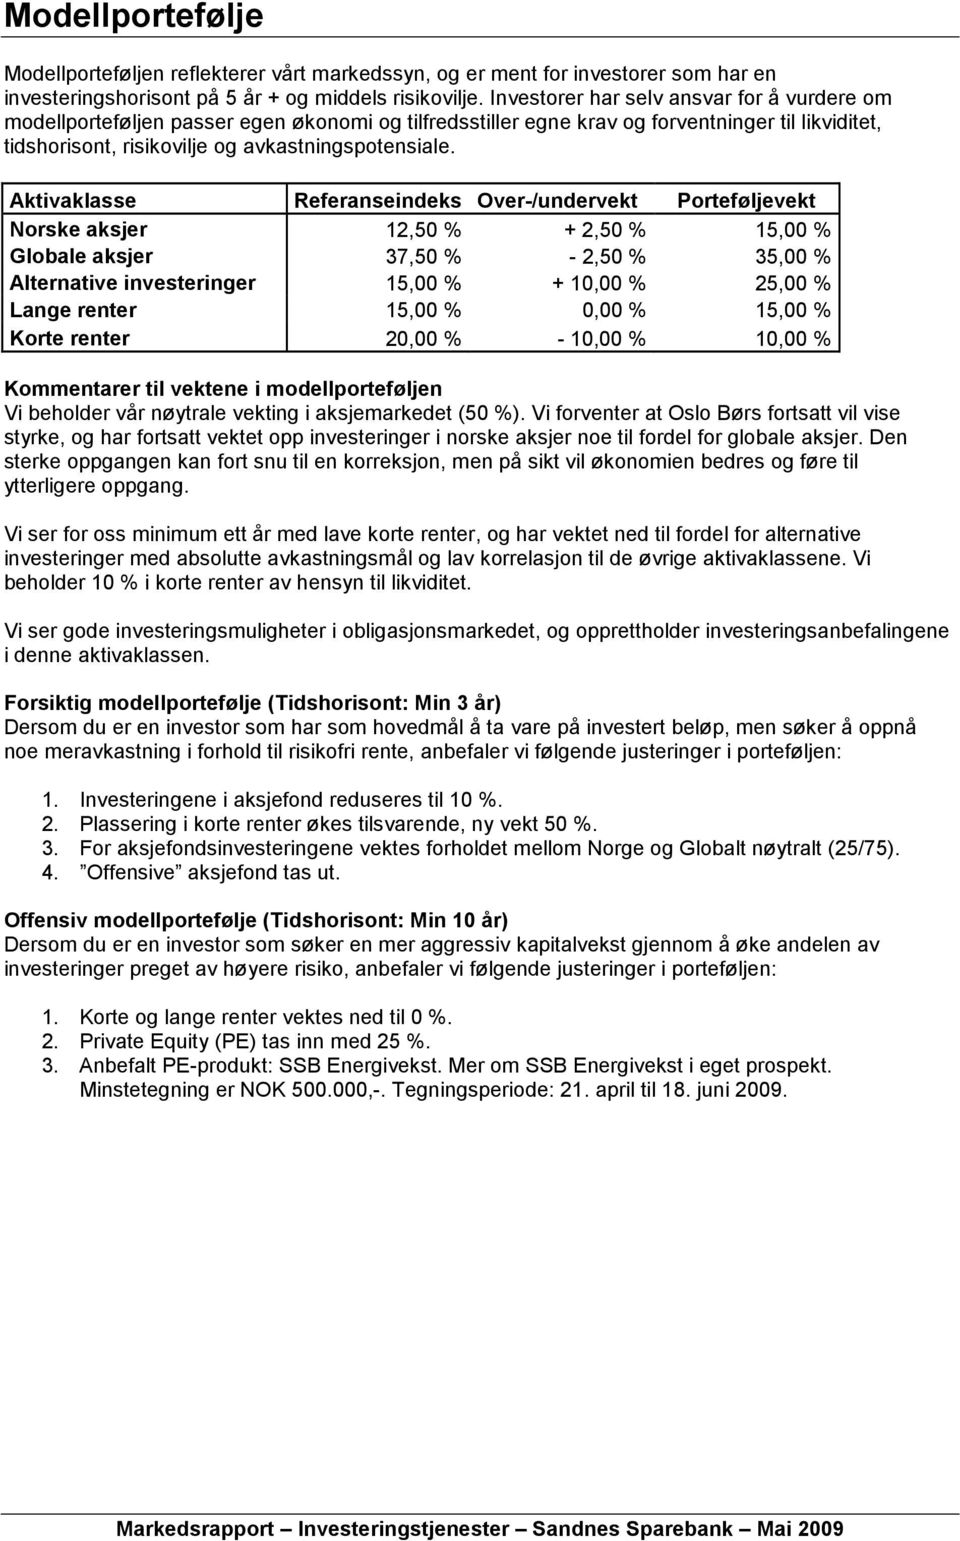 Aktivaklasse Referanseindeks Over-/undervekt Porteføljevekt Norske aksjer 12,50 % + 2,50 % 15,00 % Globale aksjer 37,50 % - 2,50 % 35,00 % Alternative investeringer 15,00 % + 10,00 % 25,00 % Lange